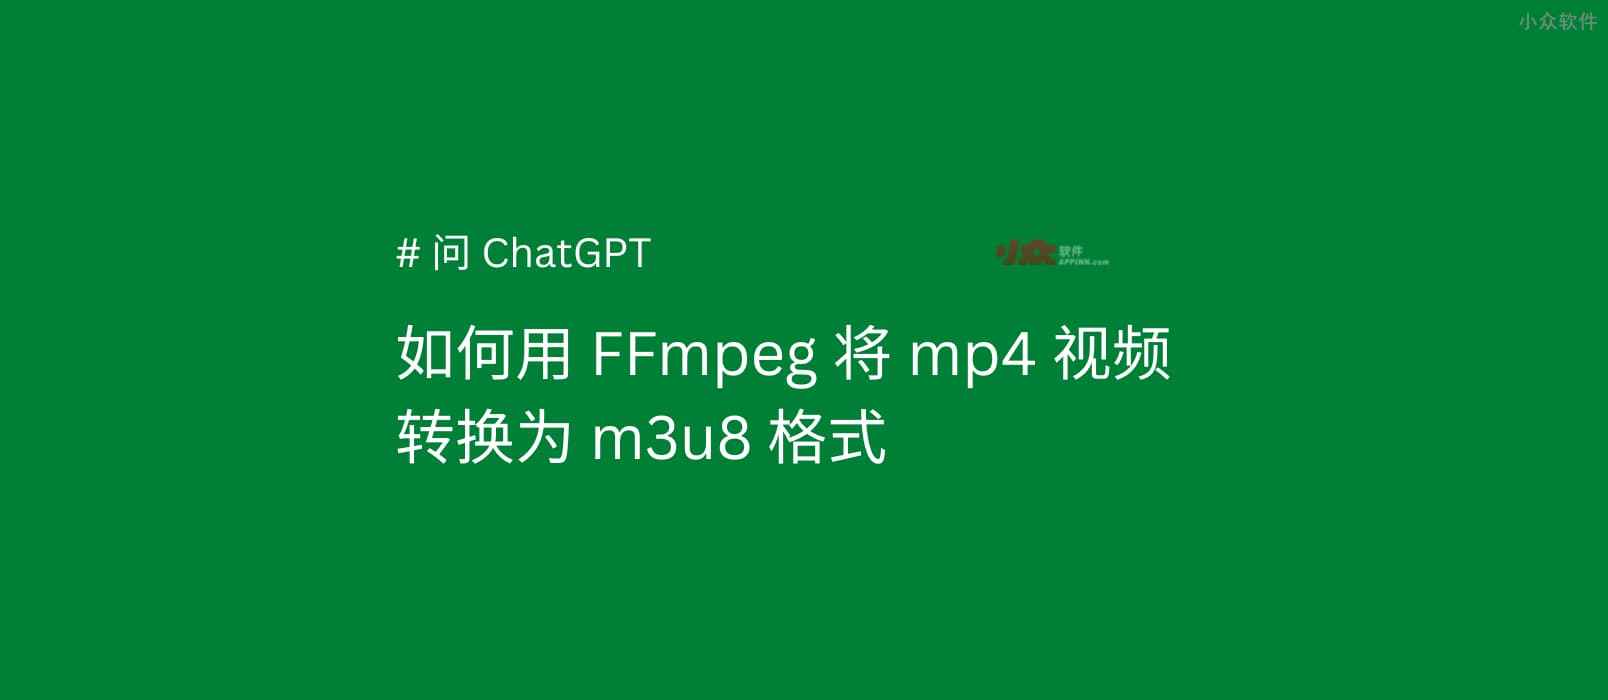 如何将 MP4 转换为 M3U8 格式？#问ChatGPT